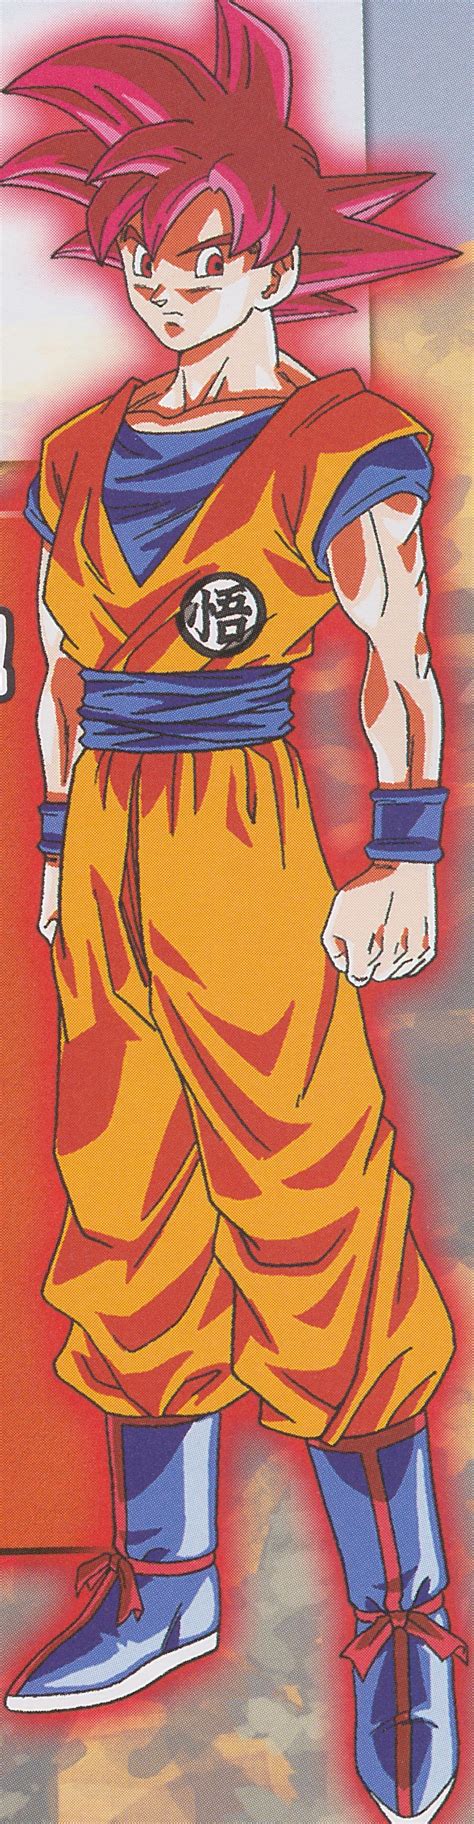 Goku được cho là có god ki sau khi hấp thụ 1 phần vào cơ thể trong trận chiến với beerus còn vegeta thì có khi goku và vegeta không được biến hình khi luyện tập. Goku History: Most Powerfull Technique